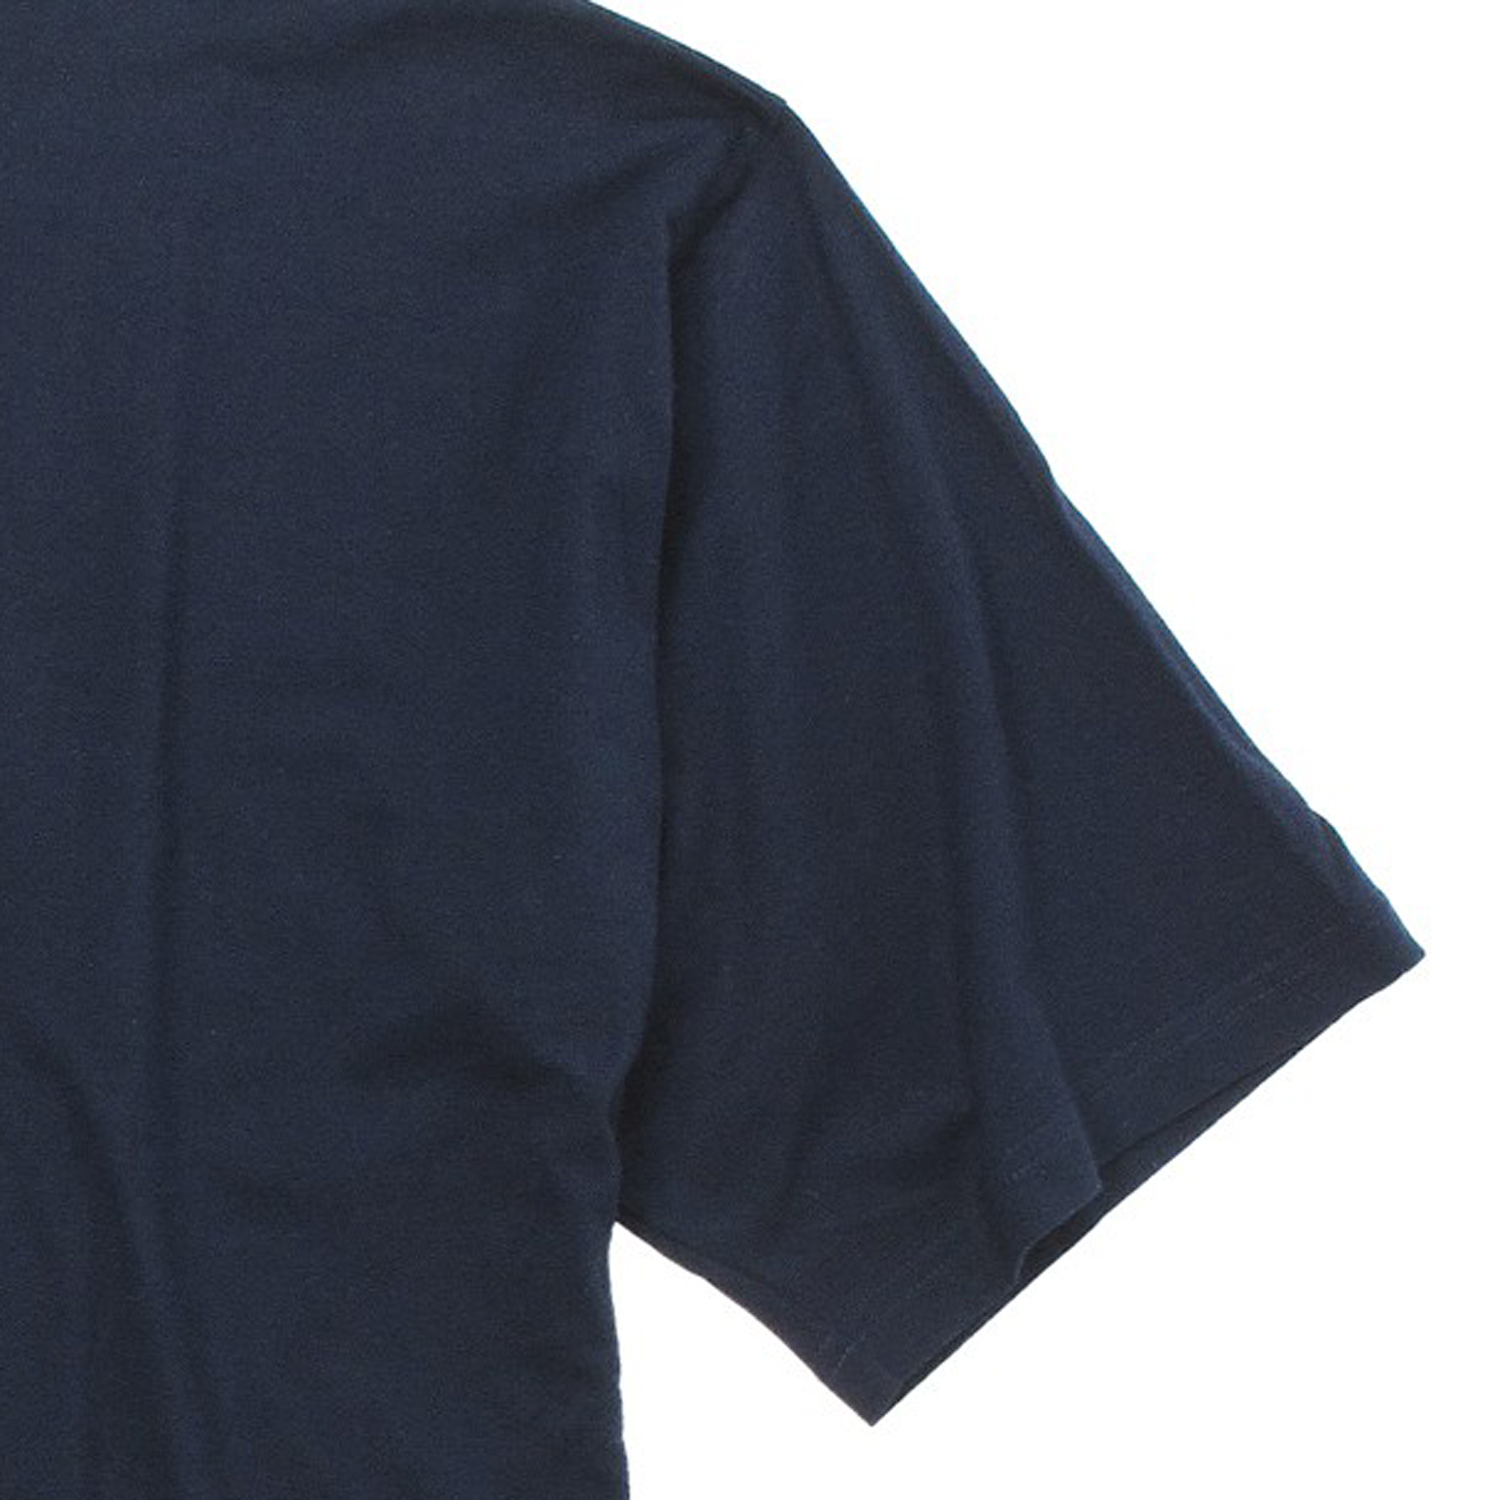 T-shirt bleu marine de Kapart // grandes tailles jusqu'au 8XL